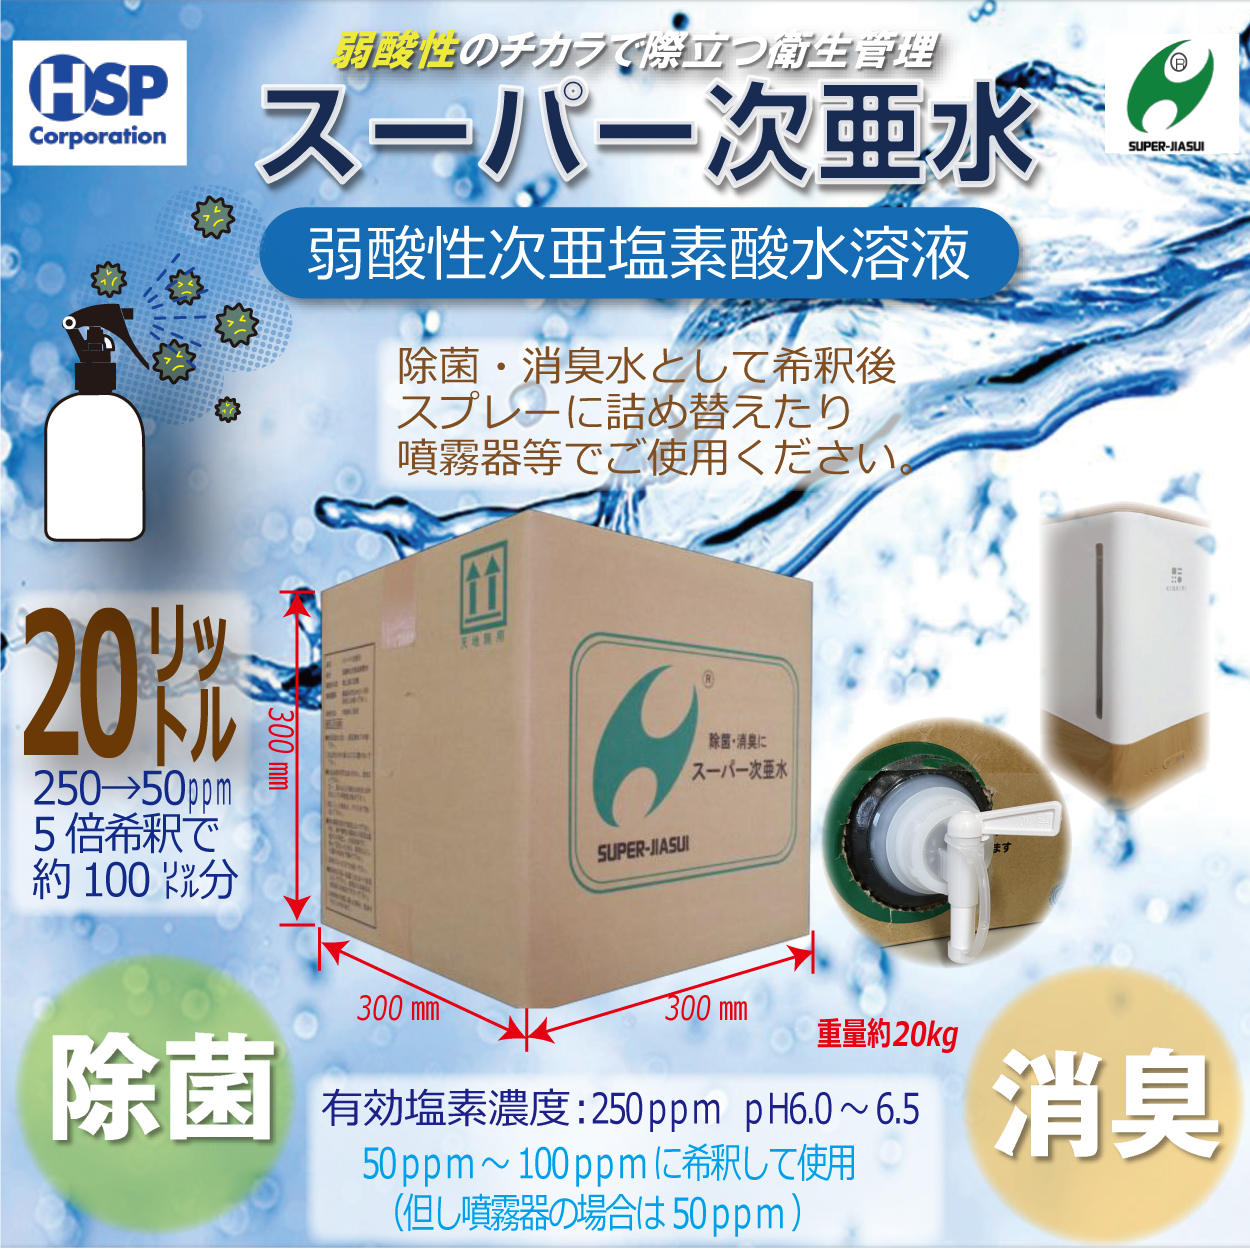 【送料無料】スーパー次亜水 20.0L 次亜塩素酸水溶液 除菌 消臭 250ppm 弱酸性6.0~6.5pH 安全 日本製